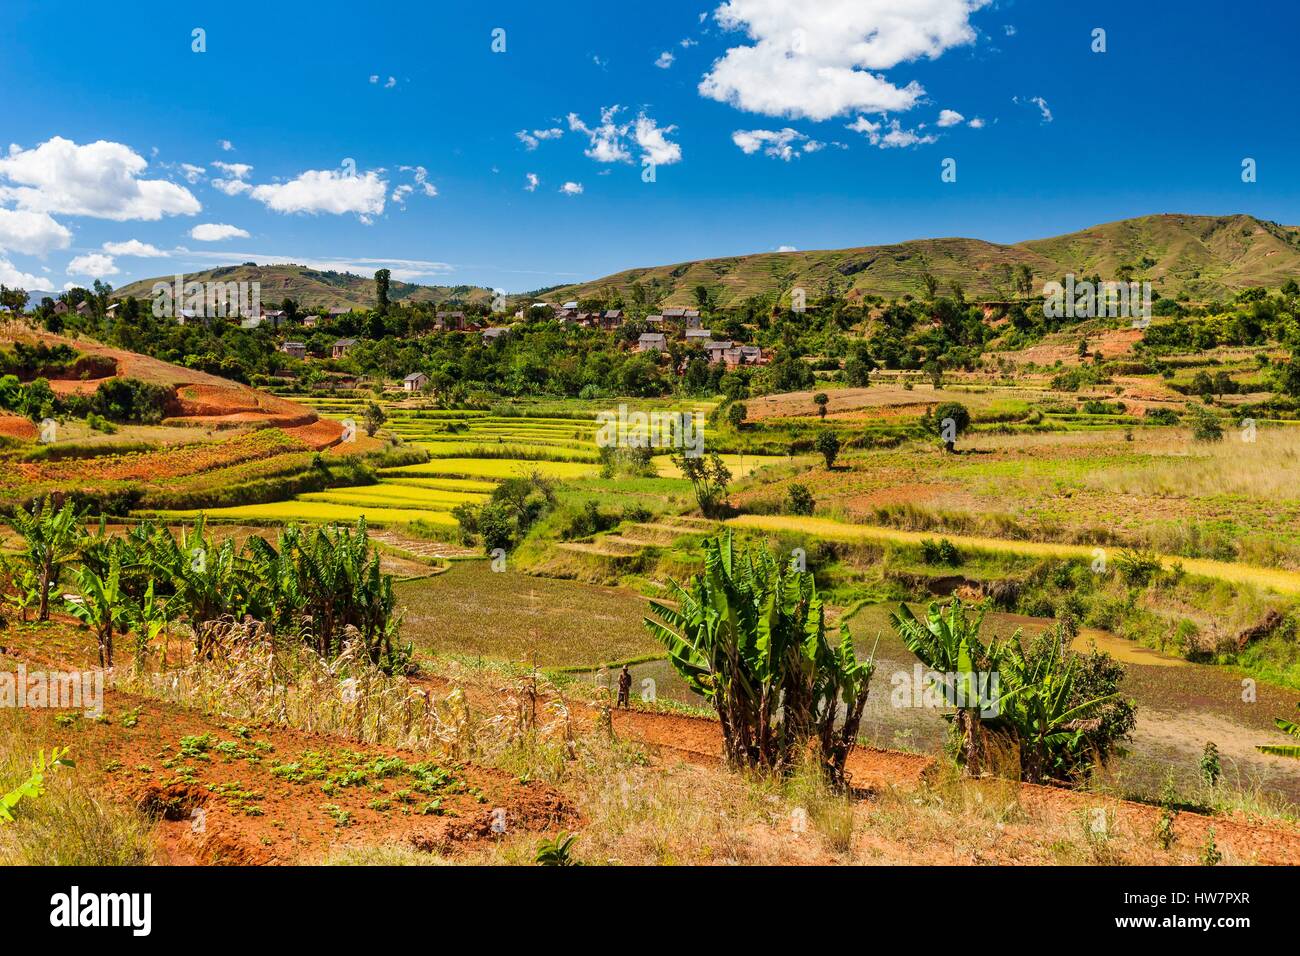 Madagascar, hauts plateaux du centre, ancienne province d'Antananarivo,  Antsirabe et Betafo, entre les champs de riz dans le pays d'ethnie betsileo  Photo Stock - Alamy